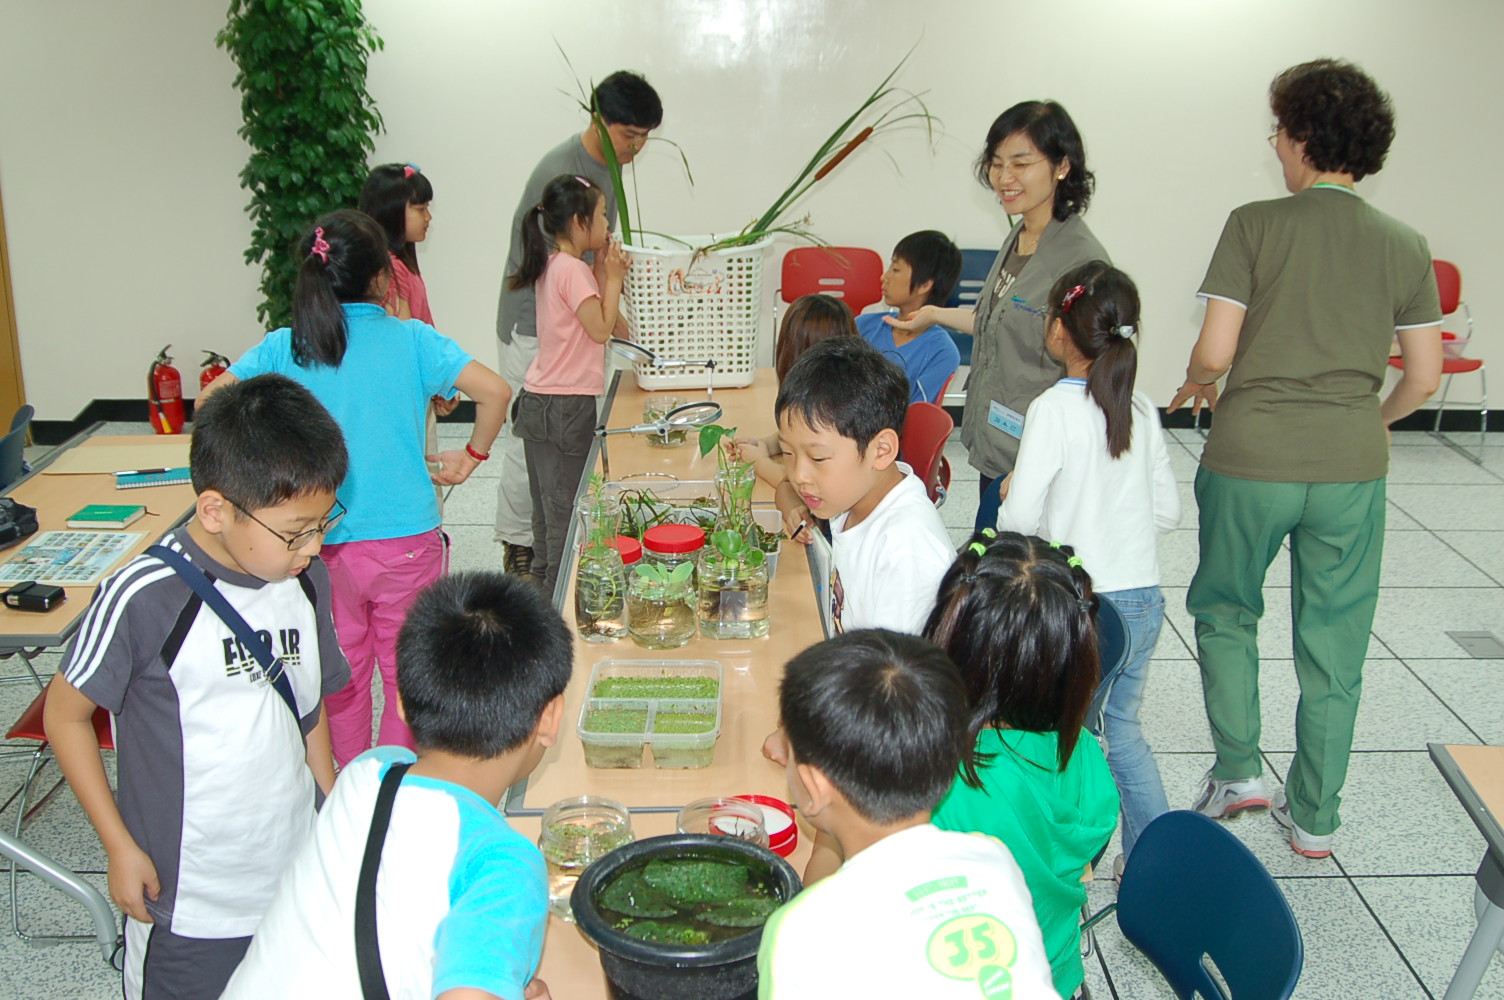 20070721 식물관찰 6썸네일